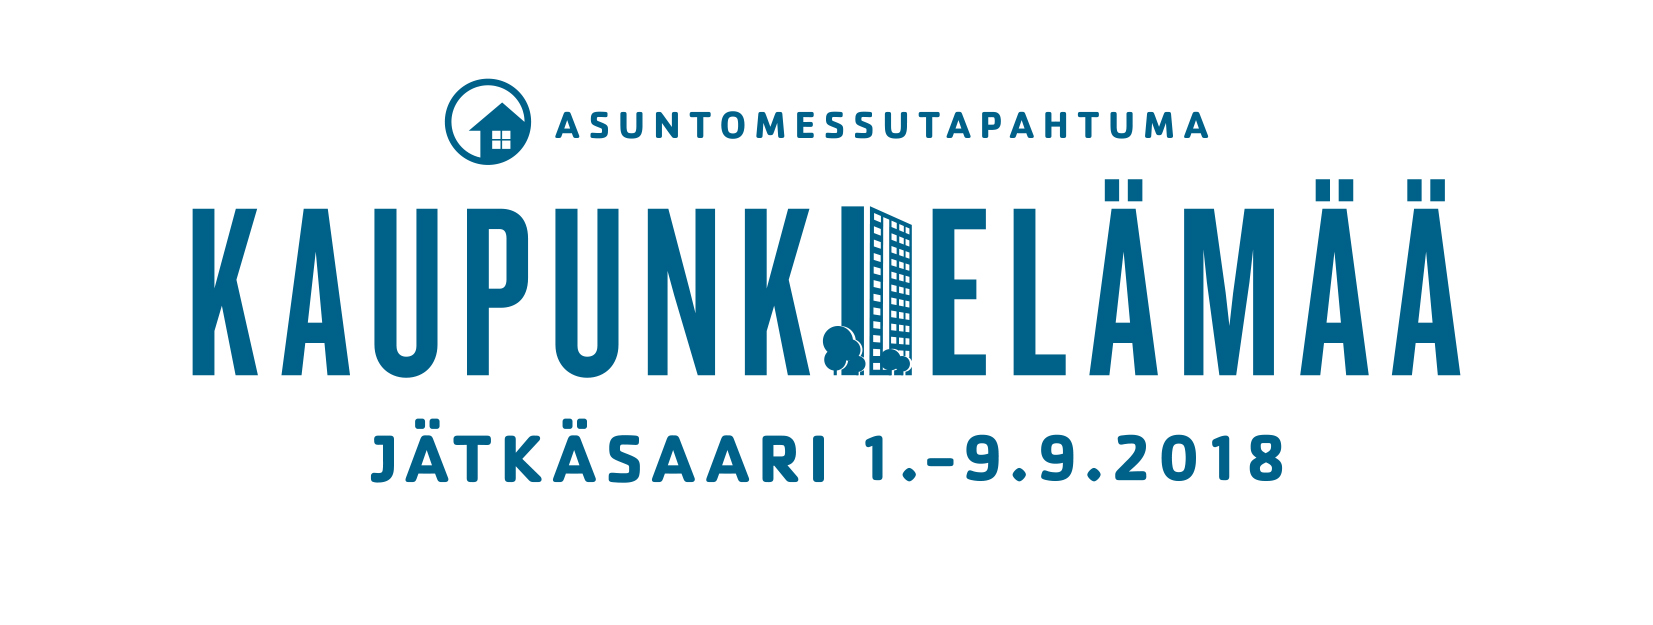 Kaupunkielämää Jätkäsaaressa 1.-9.9.2018 (logo)